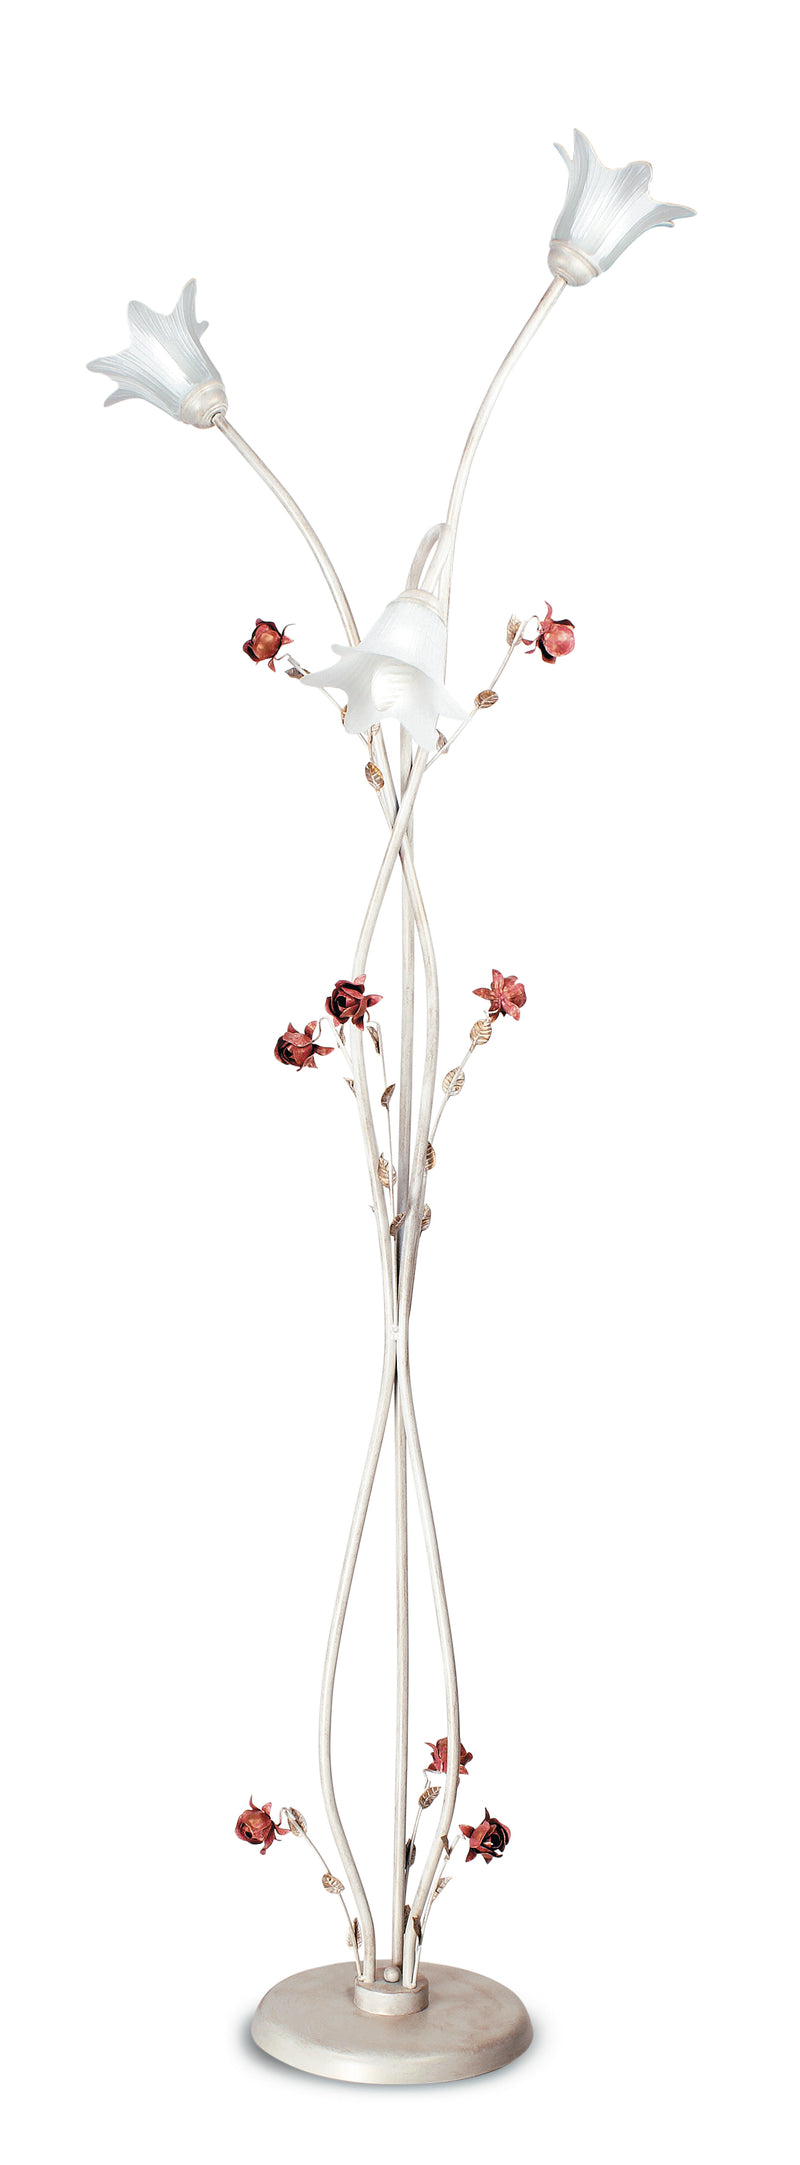 Piantana Elegante Rose Metallo Bianco Rosso diffusori Vetro Lampada da Terra Classica E14 AmbienteE/PT3-1